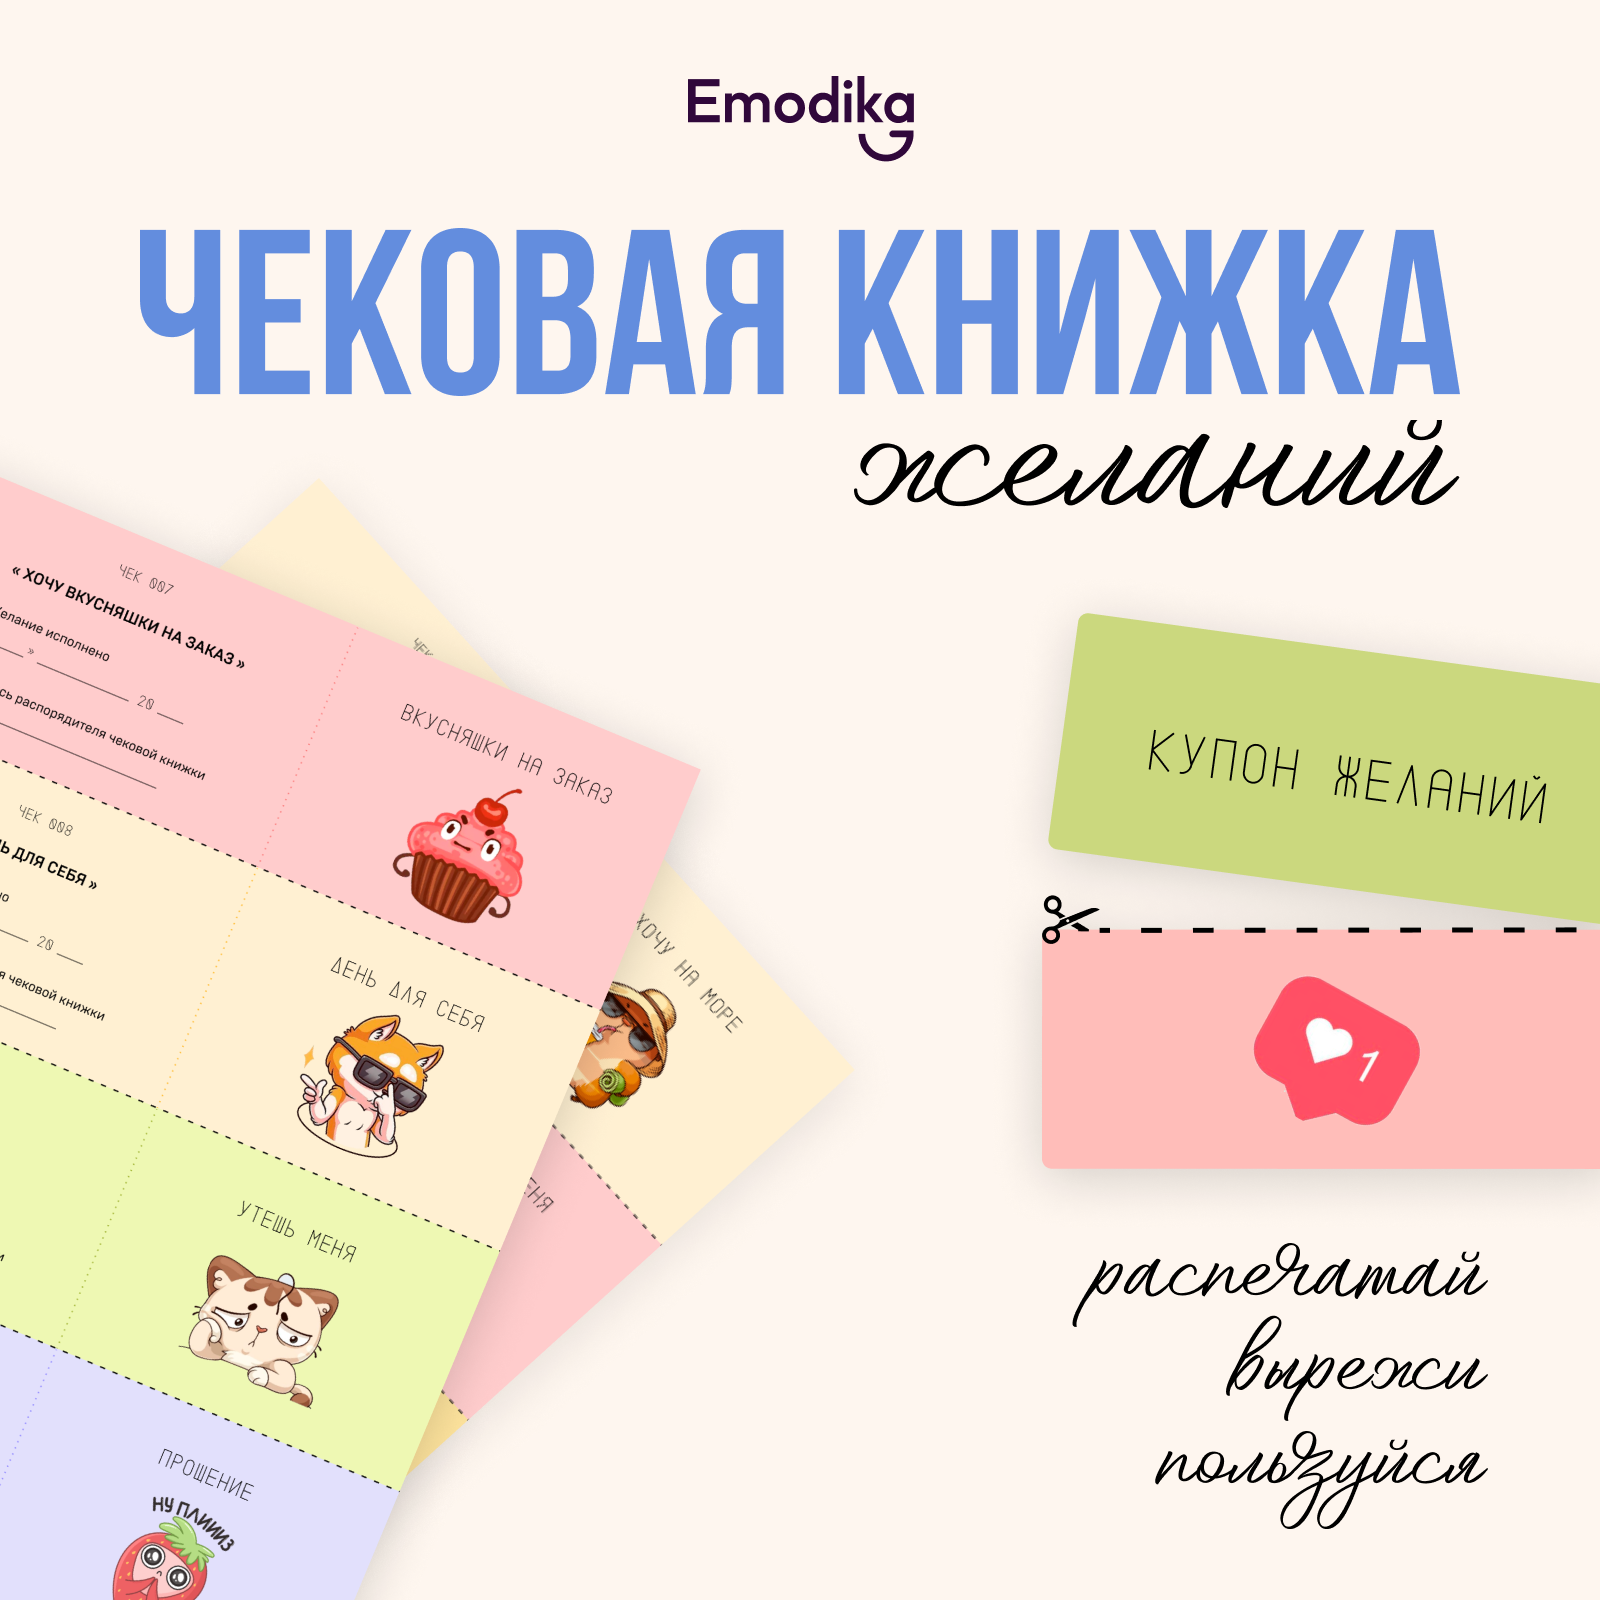 Emodika: Чековая книжка желаний